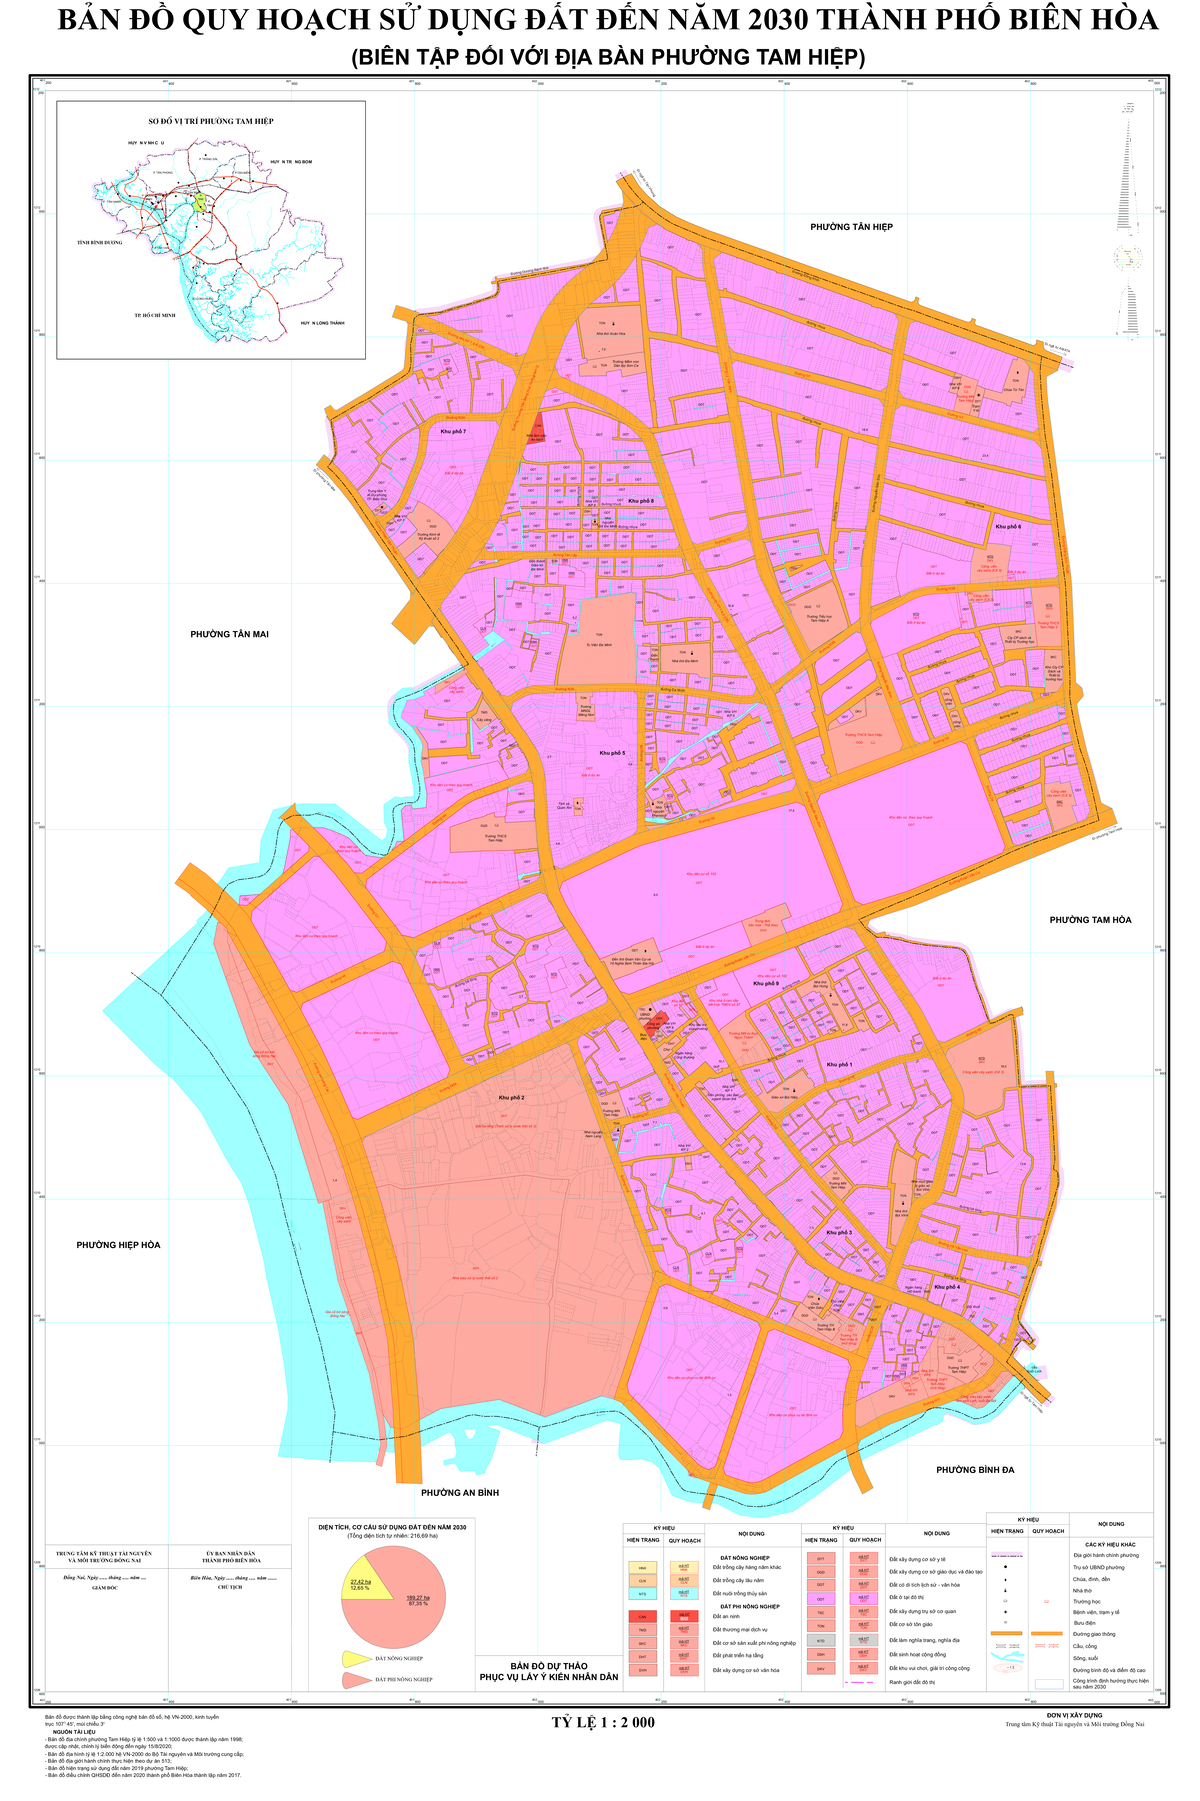 Bản đồ quy hoạch phường Tam Hiệp, thành phố Biên Hòa, tỉnh Đồng Nai đến năm 2030